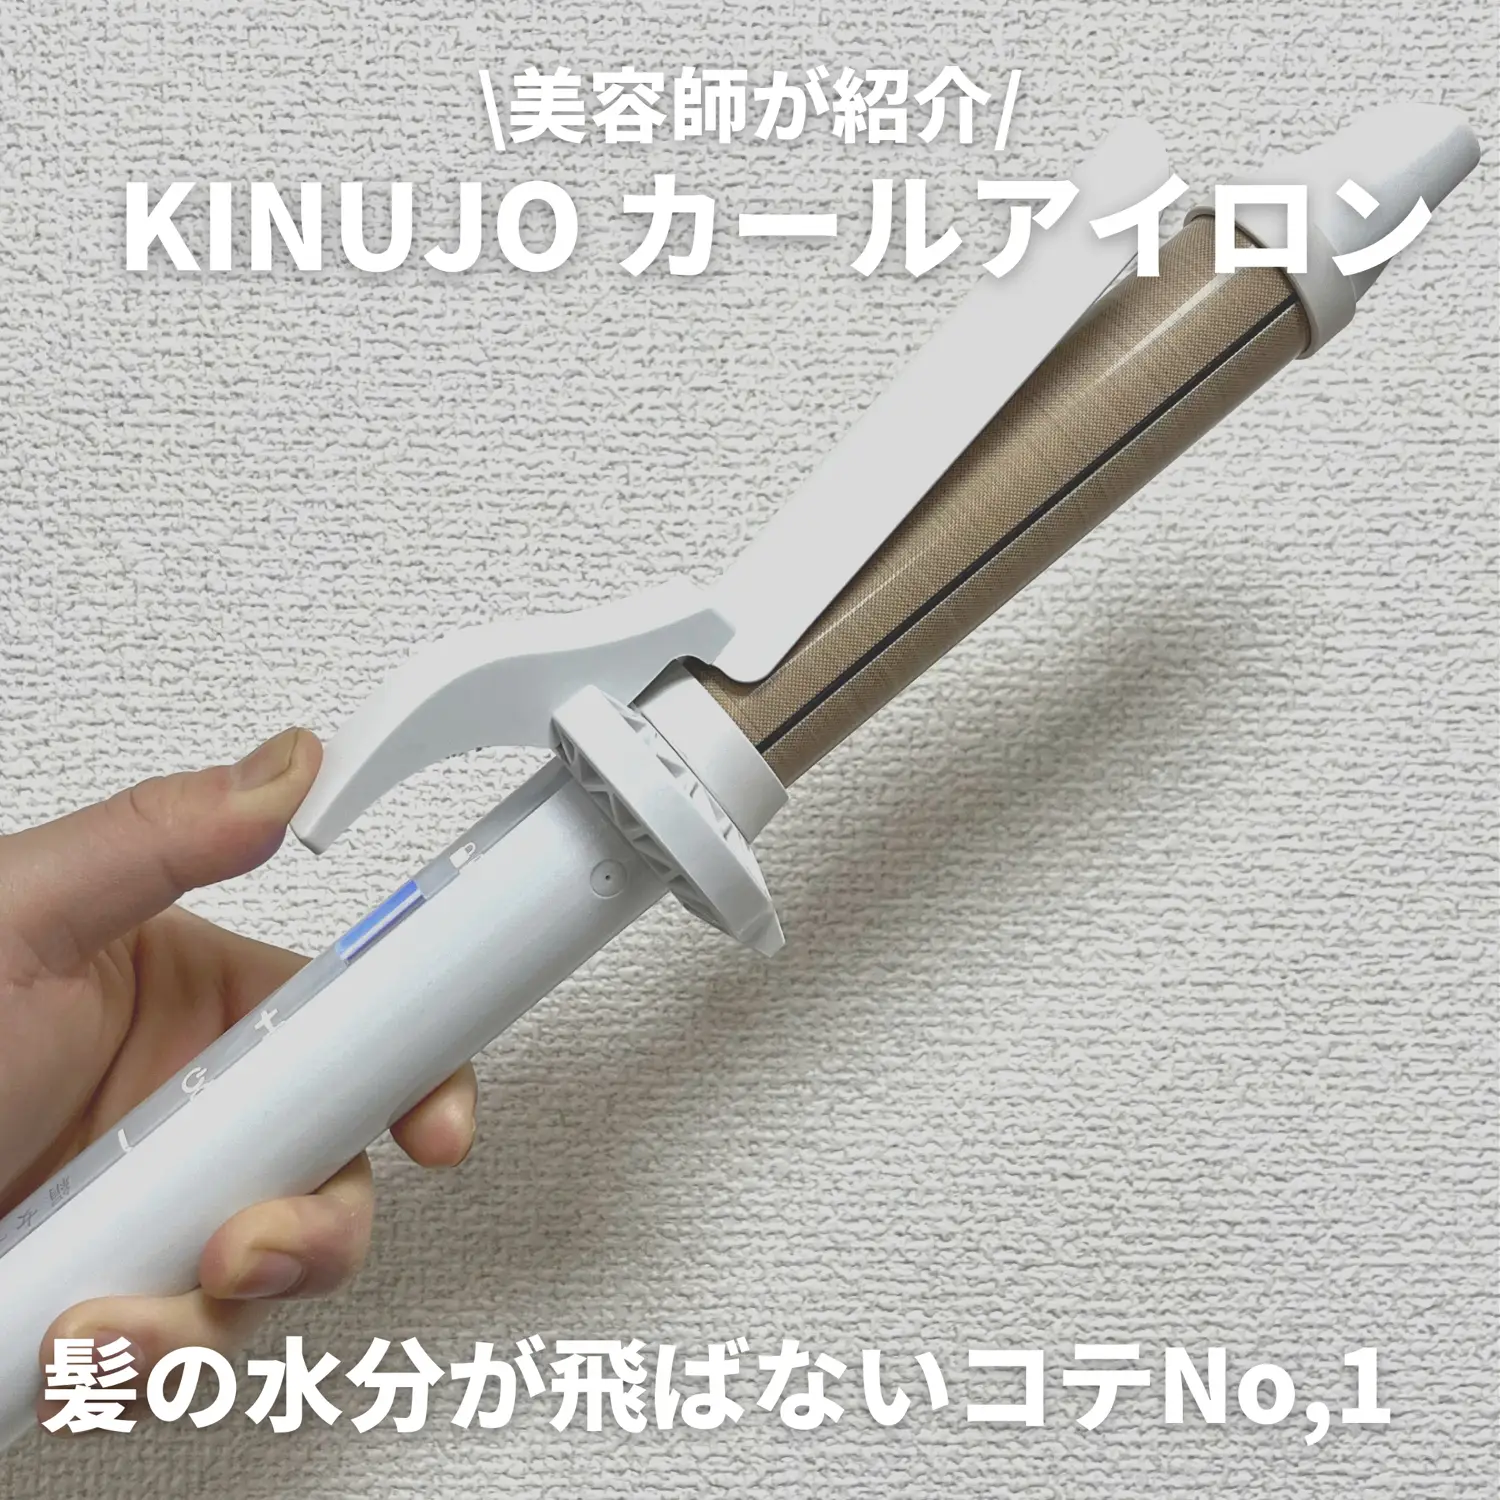 絹女 KINUJO 32mm KC032 カールアイロン コテ パールホワイト - ヘア 